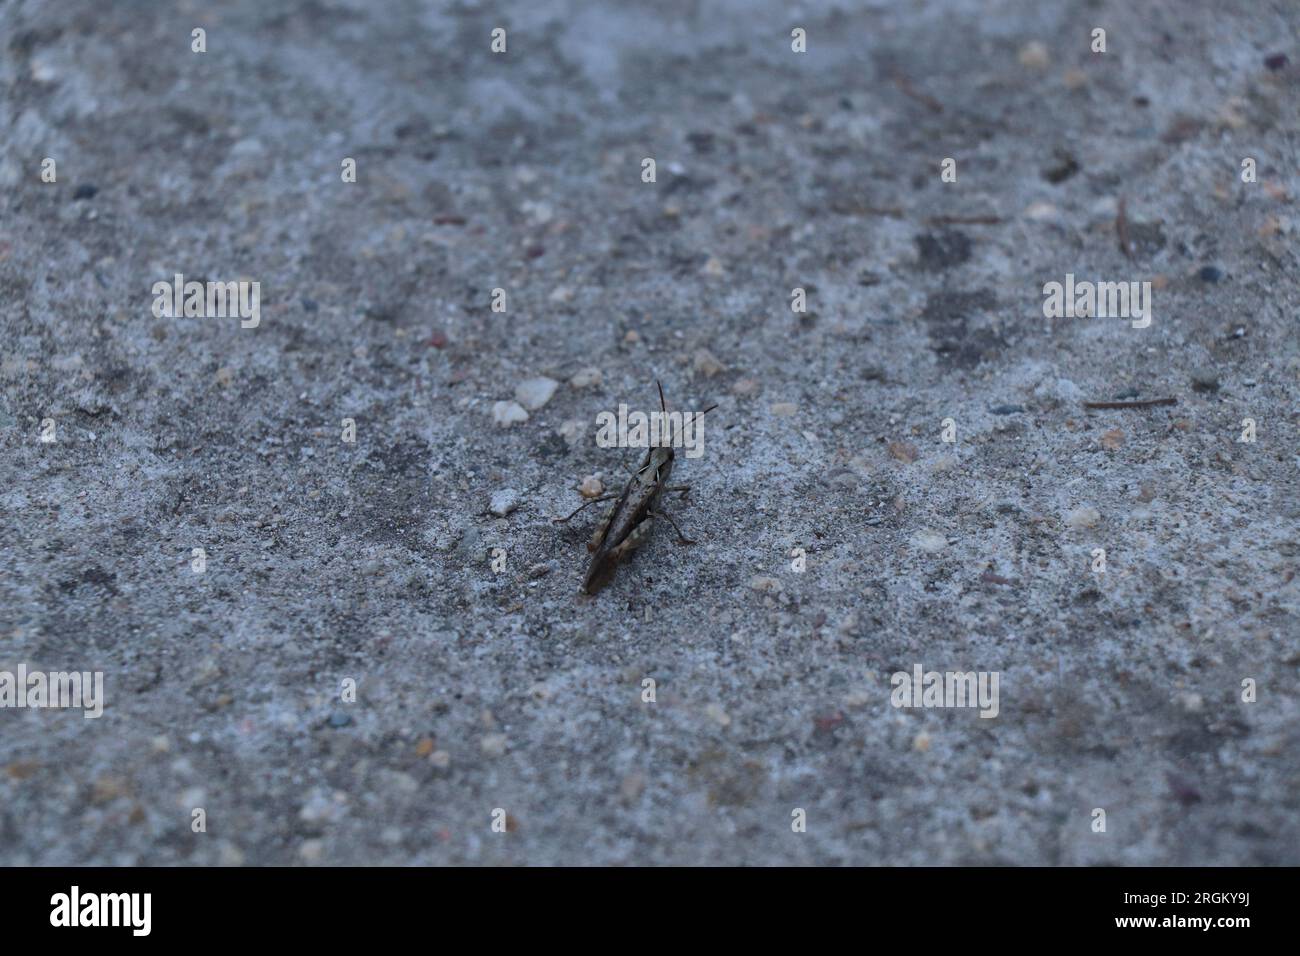 Close-up Insect Calliptamus italicus or grasshopper Stock Photo